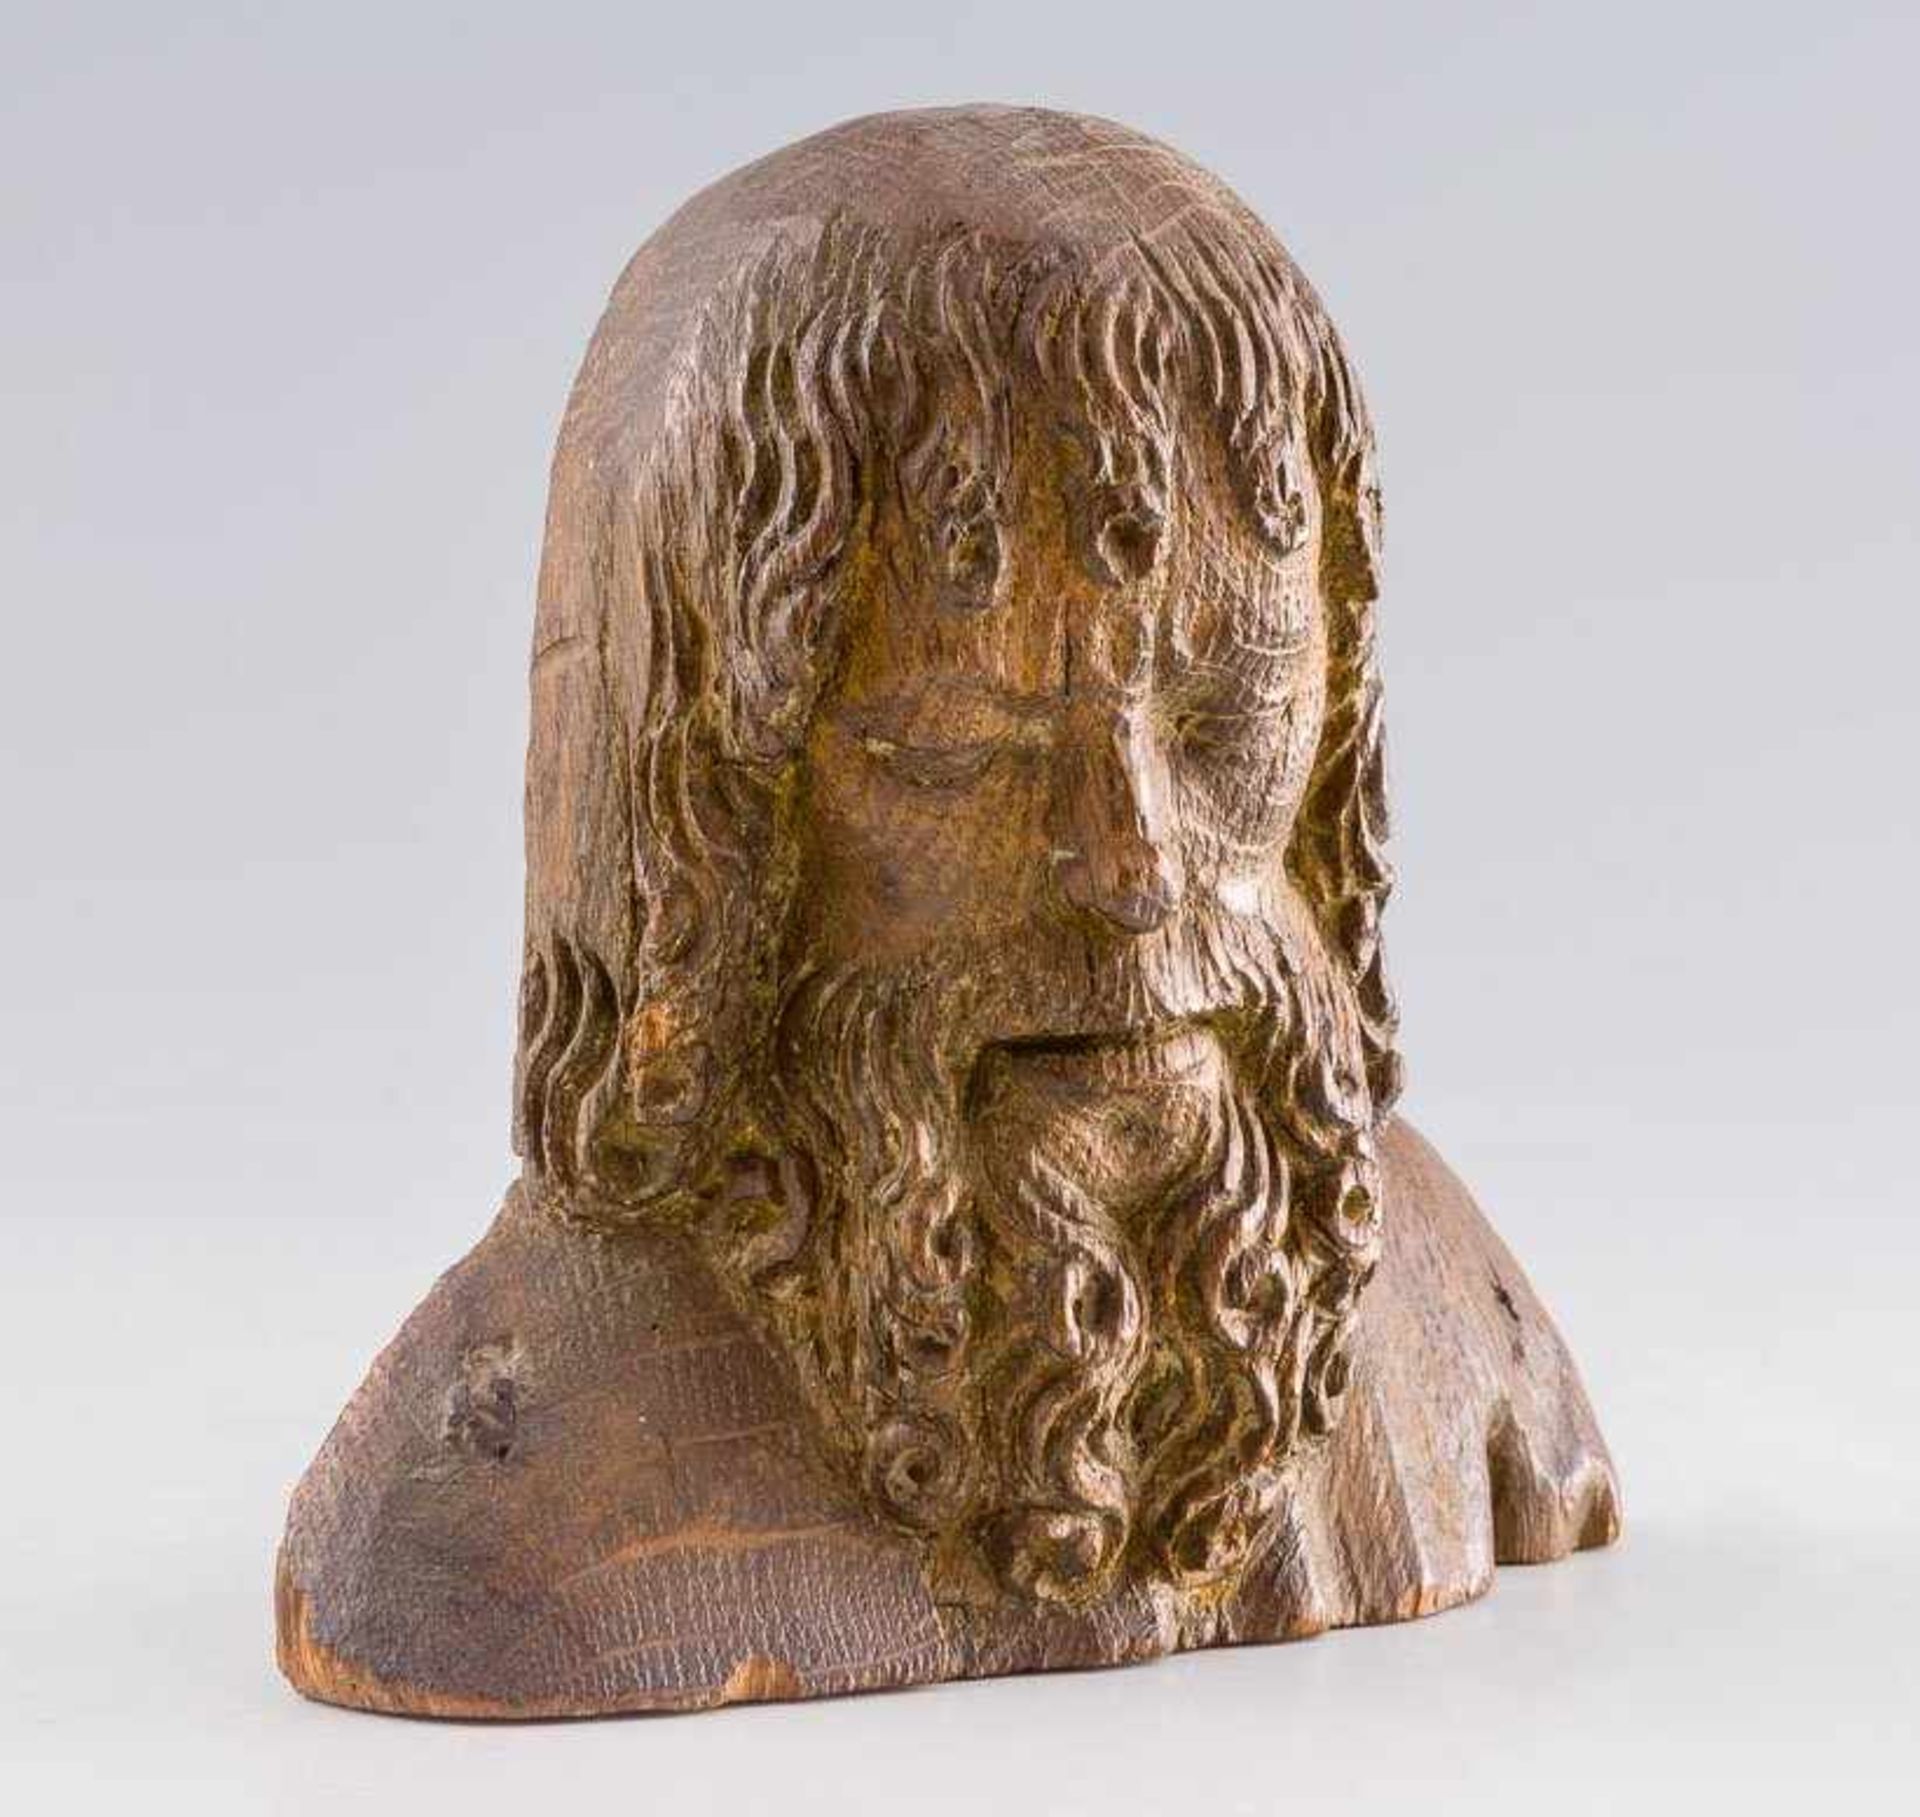 Gotischer Kopf mit Lockenhaar und -bart. Holz. H. 13 cm. Laut handschriftlicher Notiz von Leonie